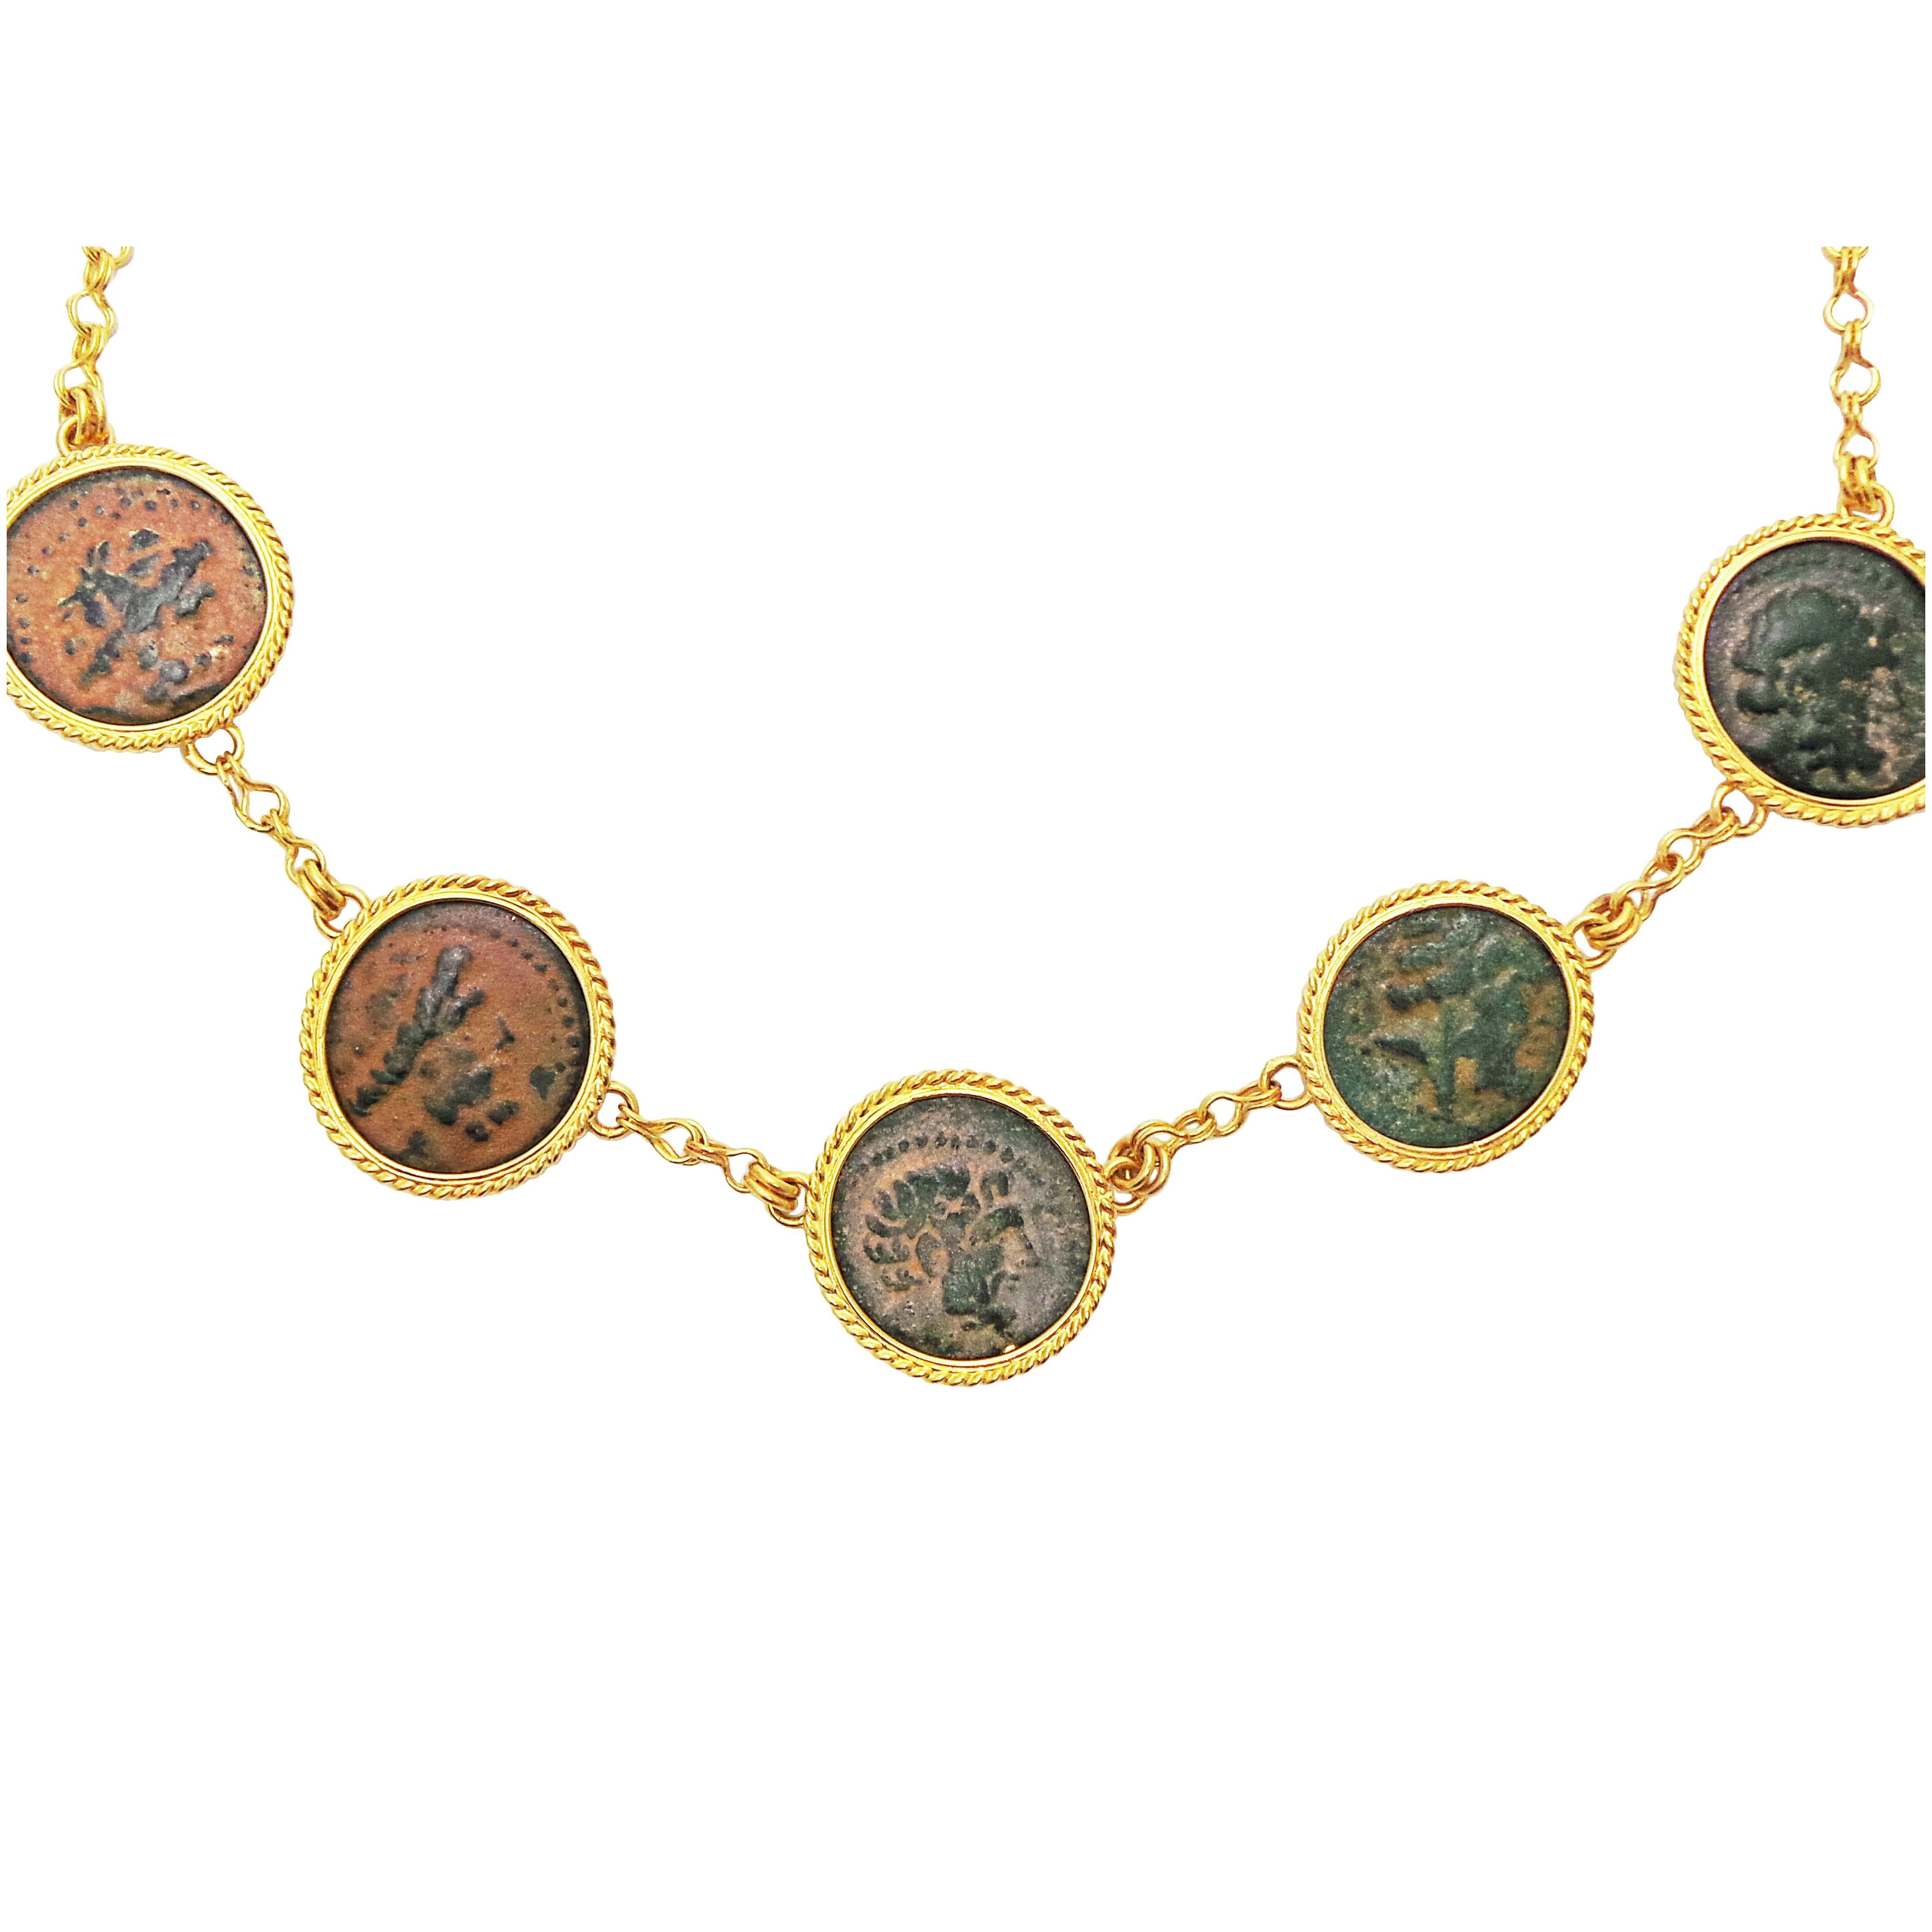 Fünf authentische antike hellenistische Bronzemünzen (Arados in Phönizien; 206-140 v. Chr.), eingefasst in Seilfassungen aus 22 Karat Gelbgold.  Jede Münze ist fest in eine handgefertigte 22-karätige Kette eingebunden. Obwohl es sich bei diesen fünf